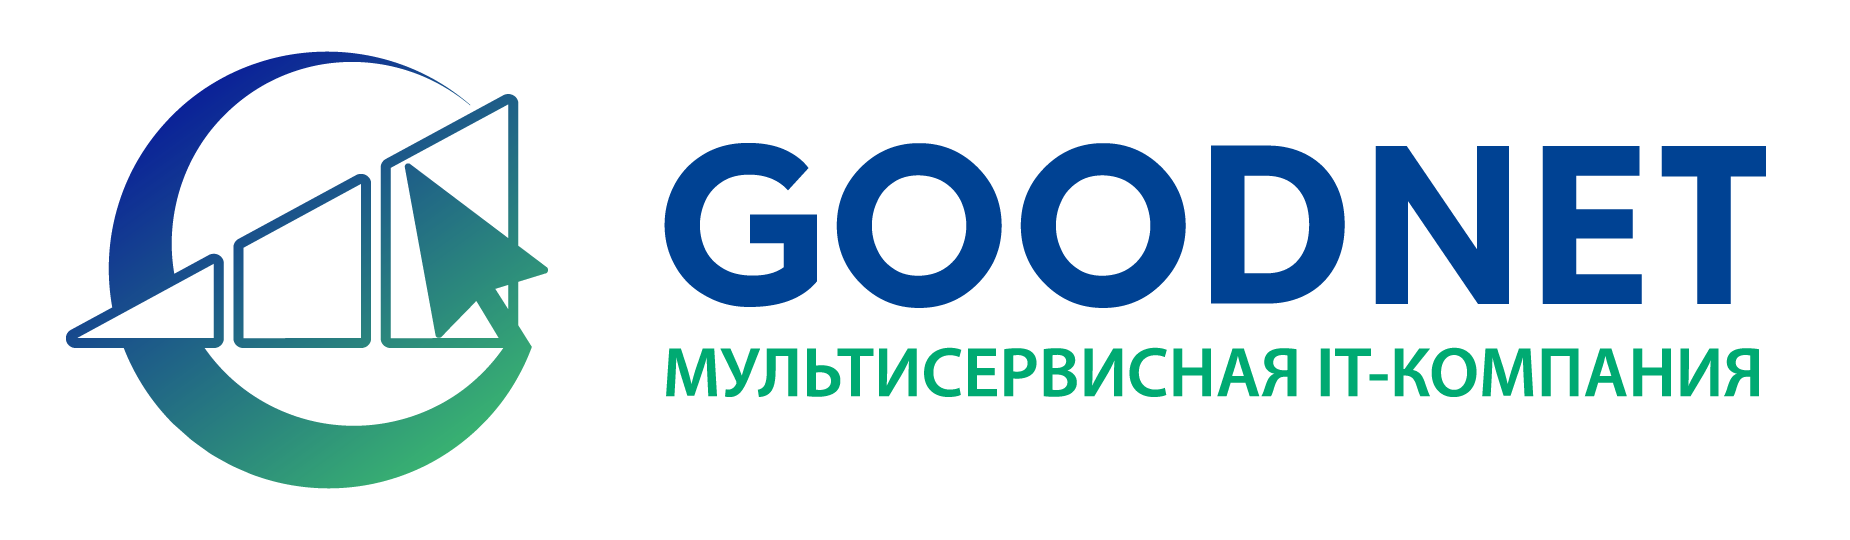 компания конго москва московский кредитный банк бизнес онлайн